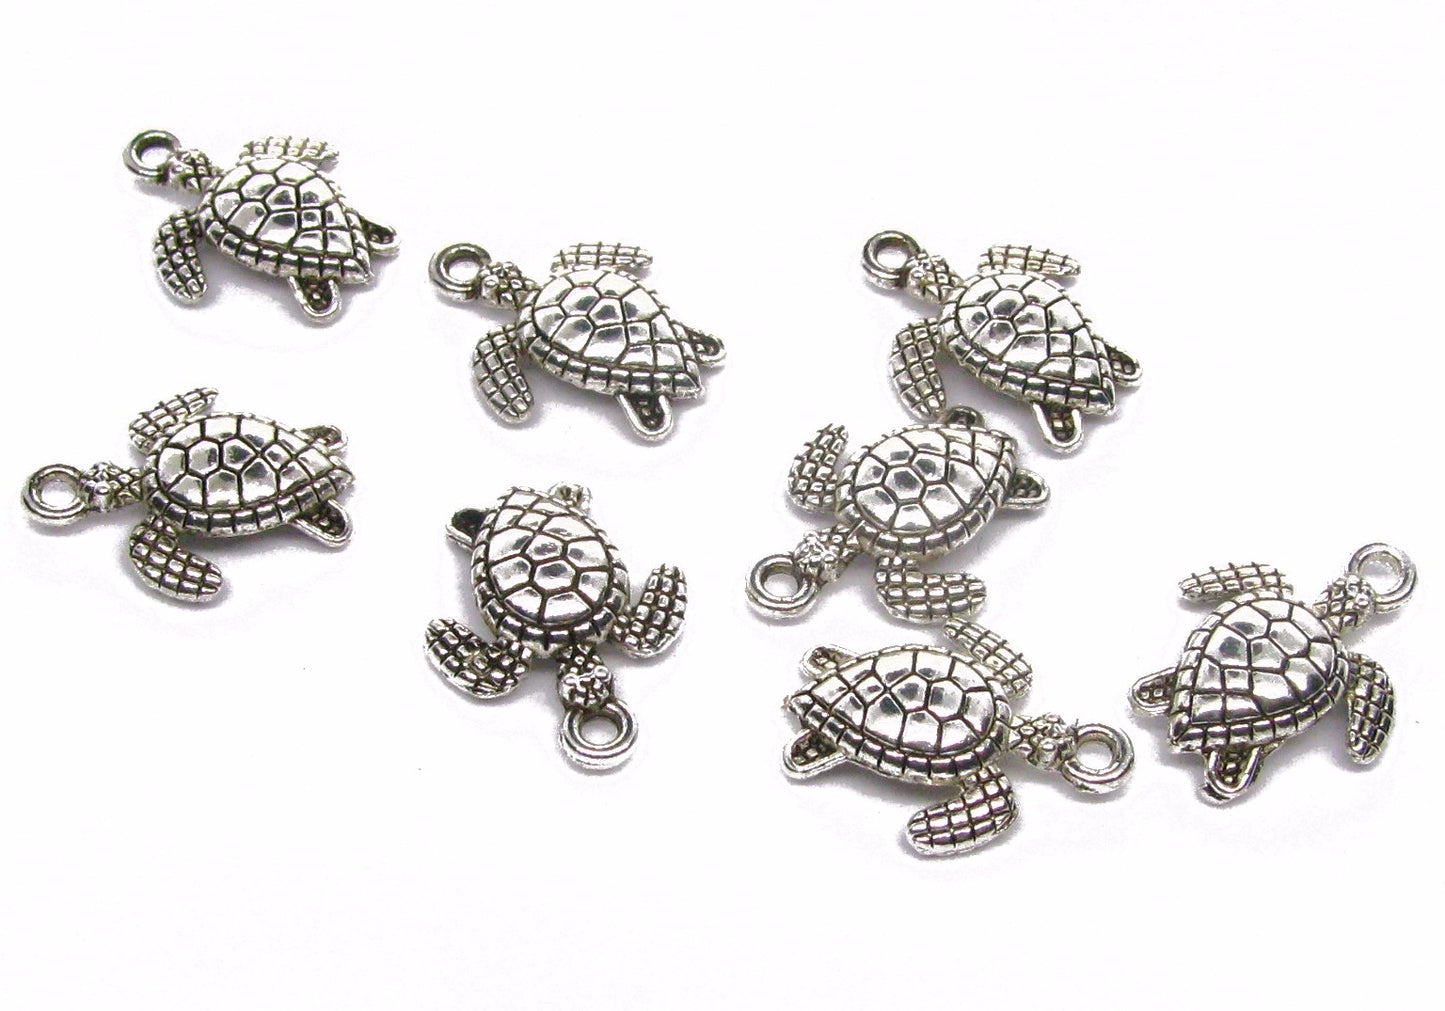 8 Metallanhänger Schildkröte, Silberfarben 1,8 cm, Schmuck mit Perlen basteln